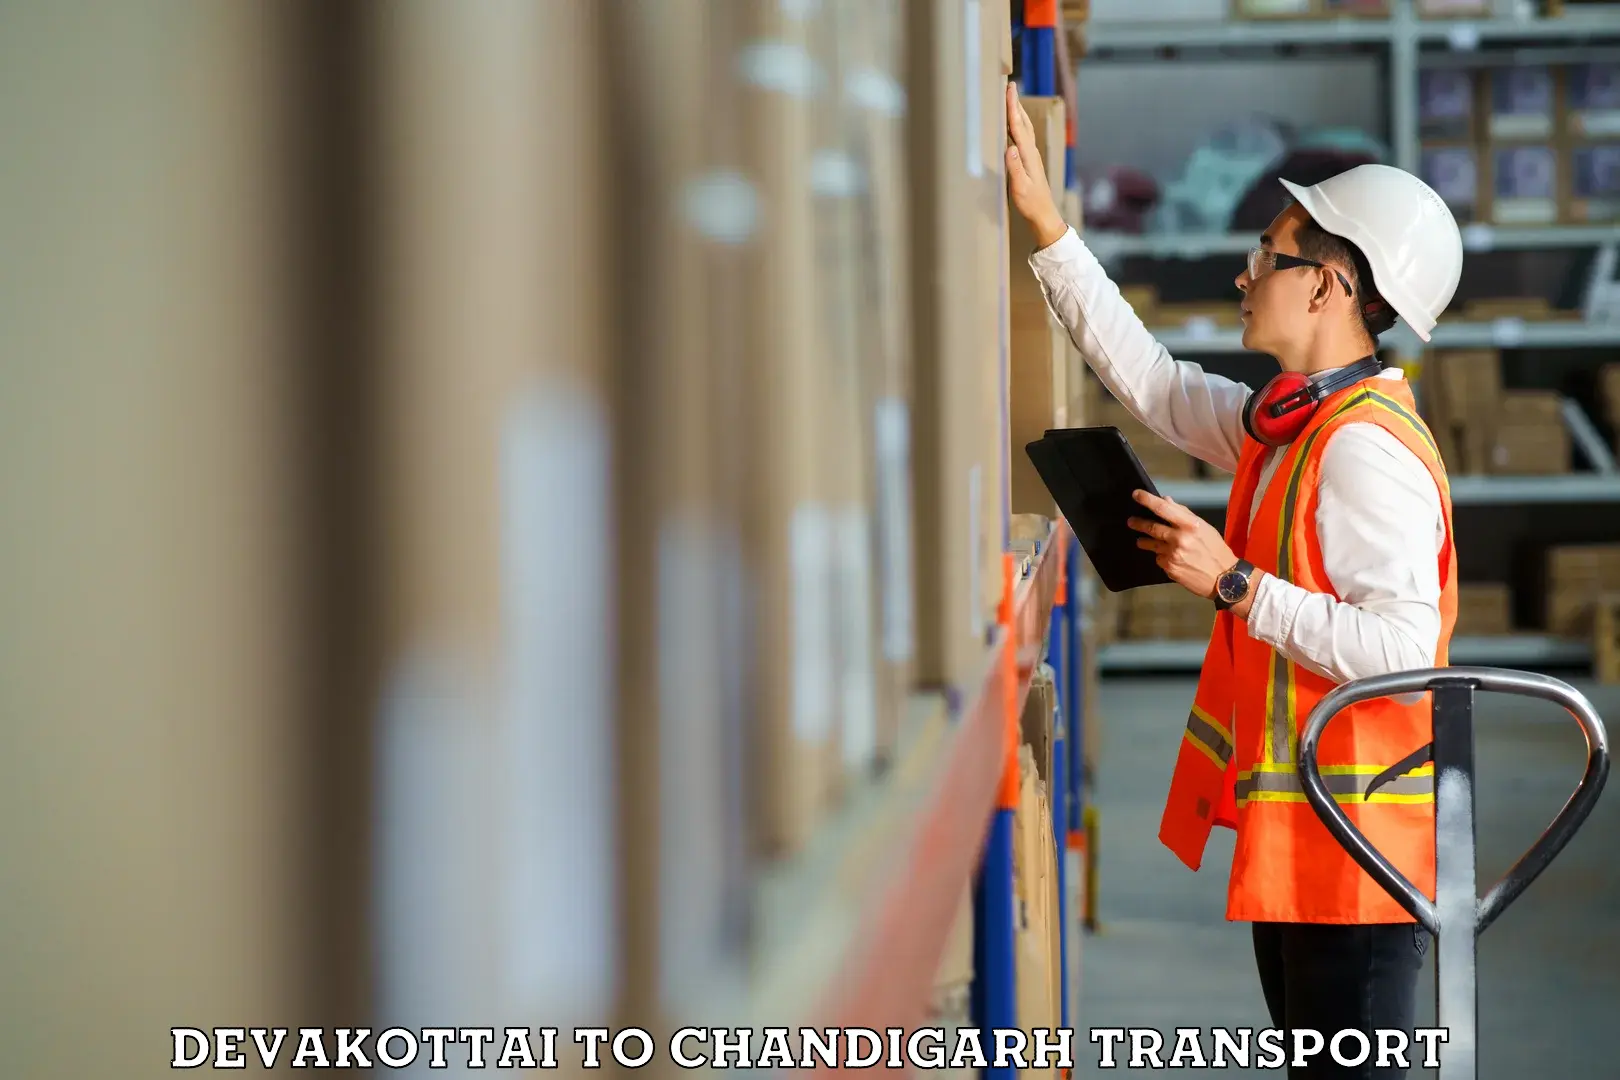 Road transport online services Devakottai to Chandigarh